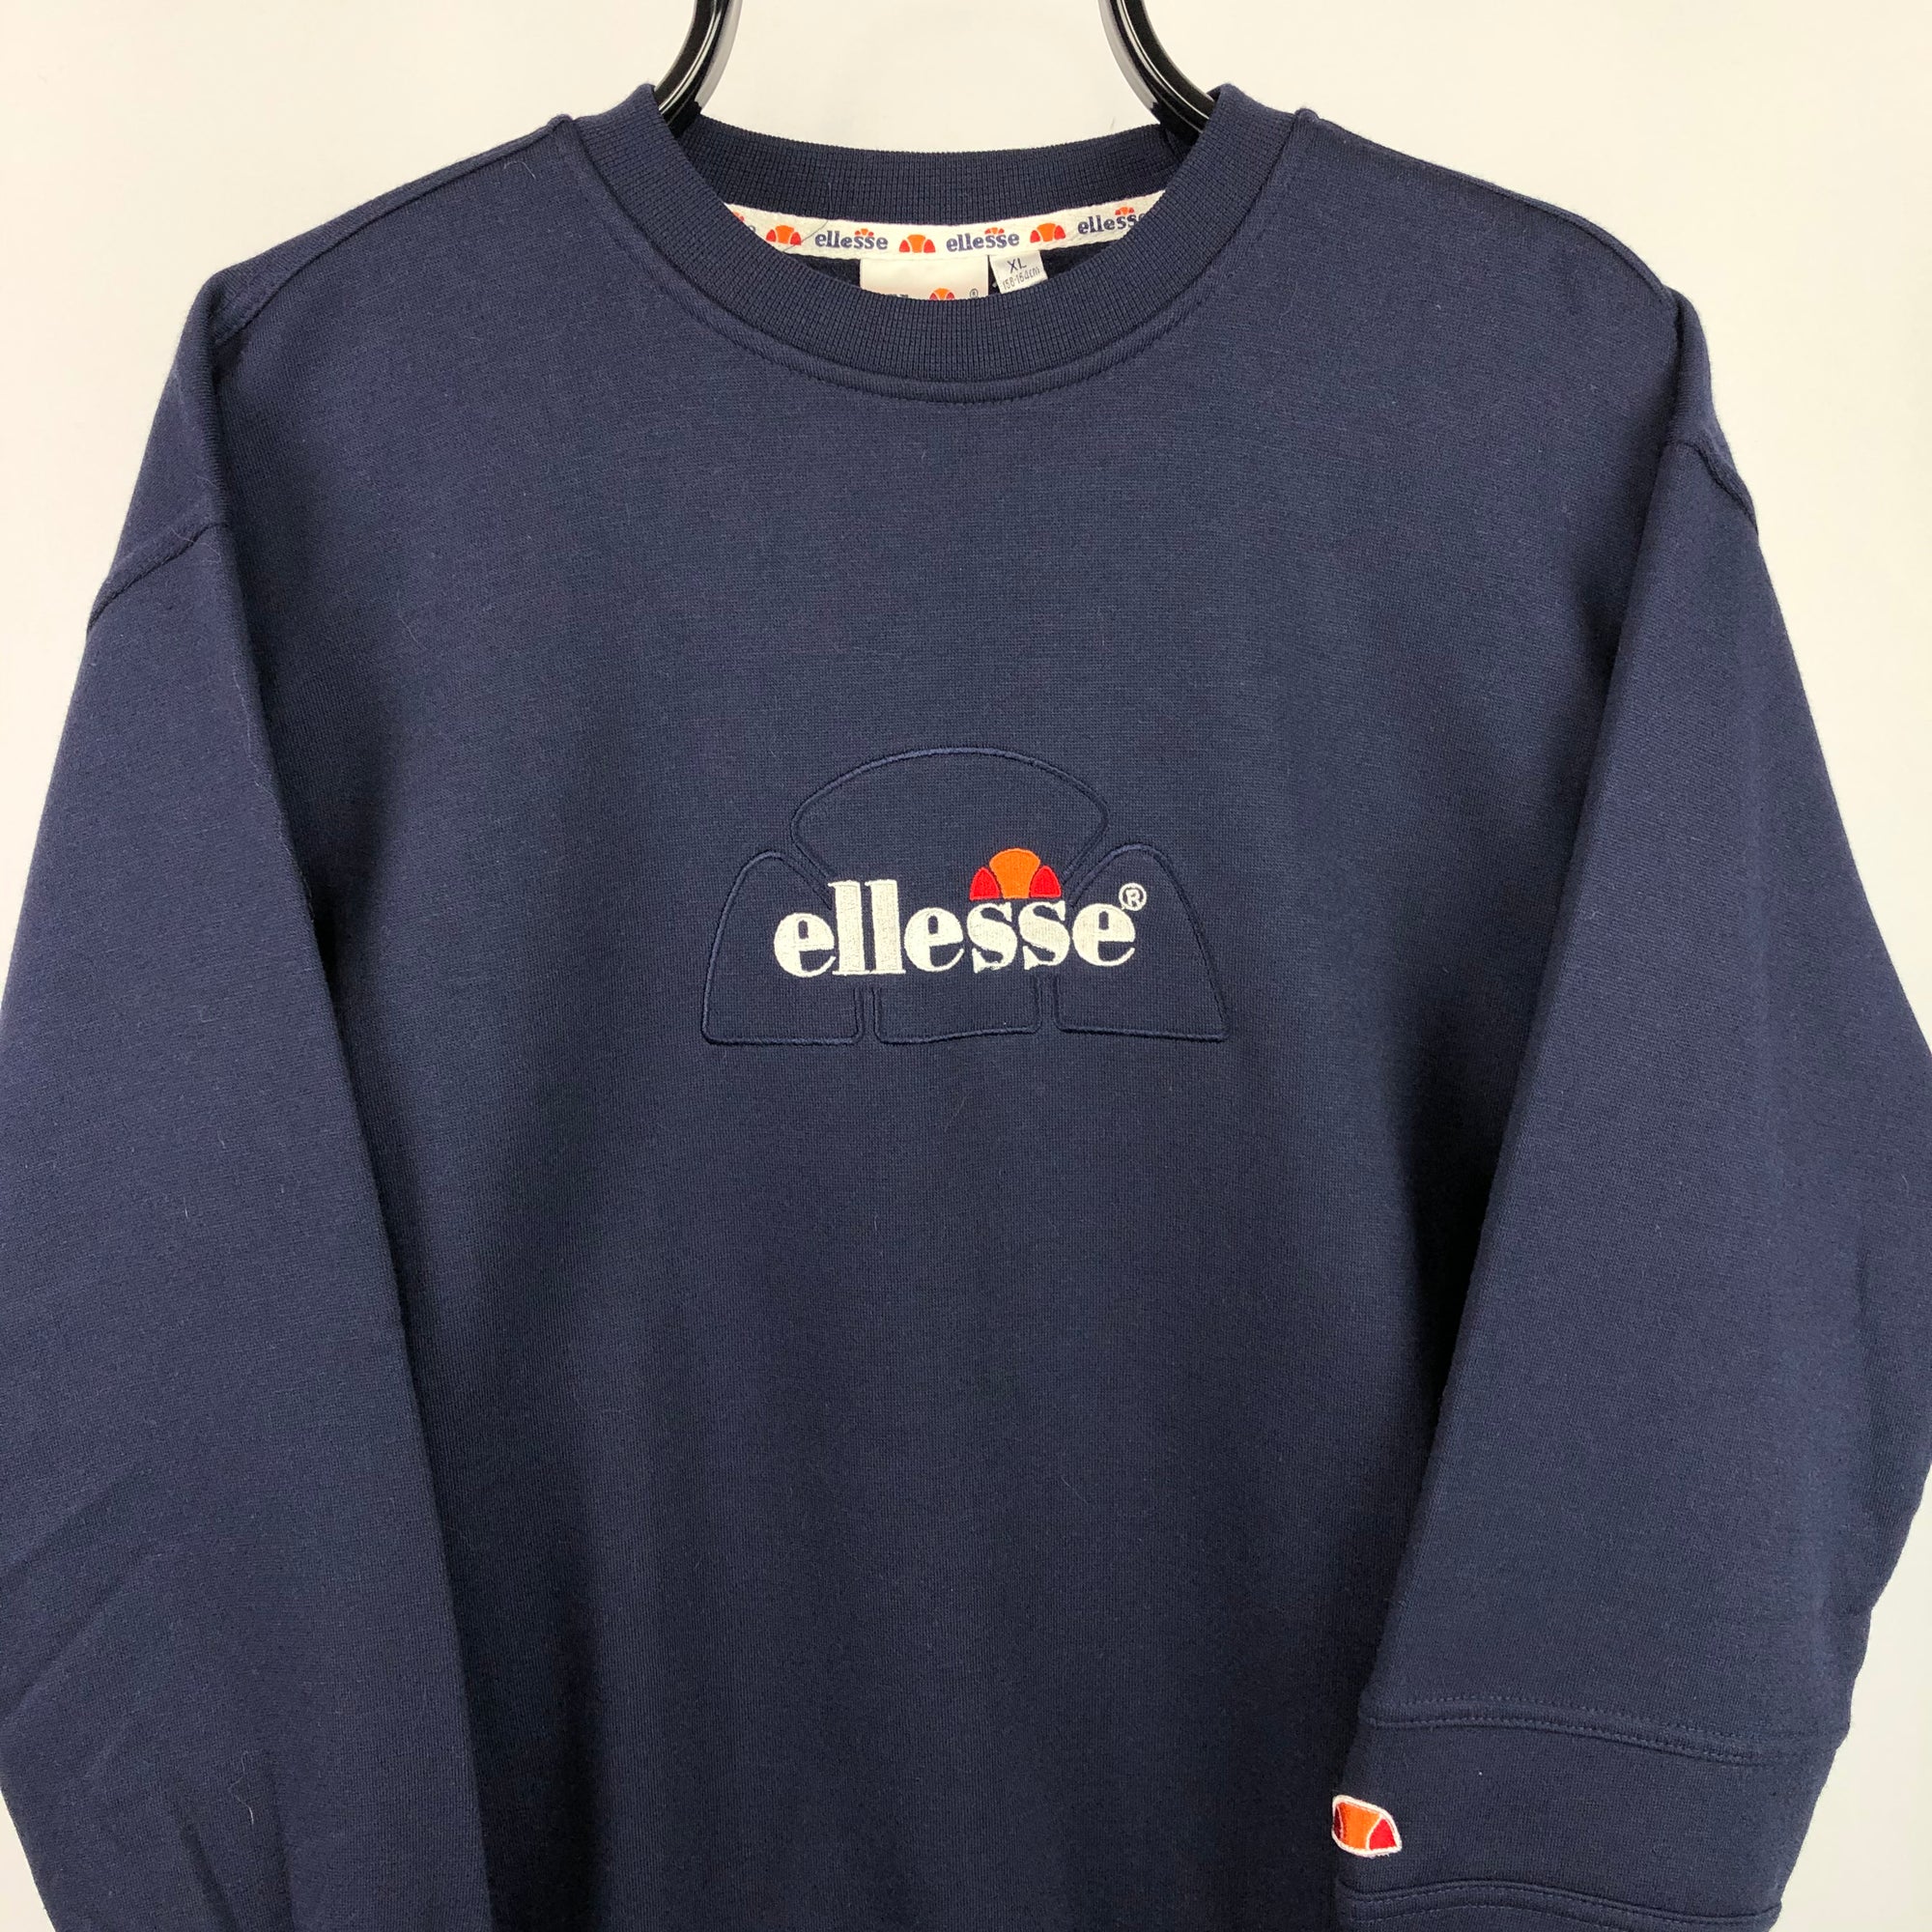 Deadstock Vintage 90s Ellesse Spellout Sweatshirt in Navy - Men's Small/Women's Medium